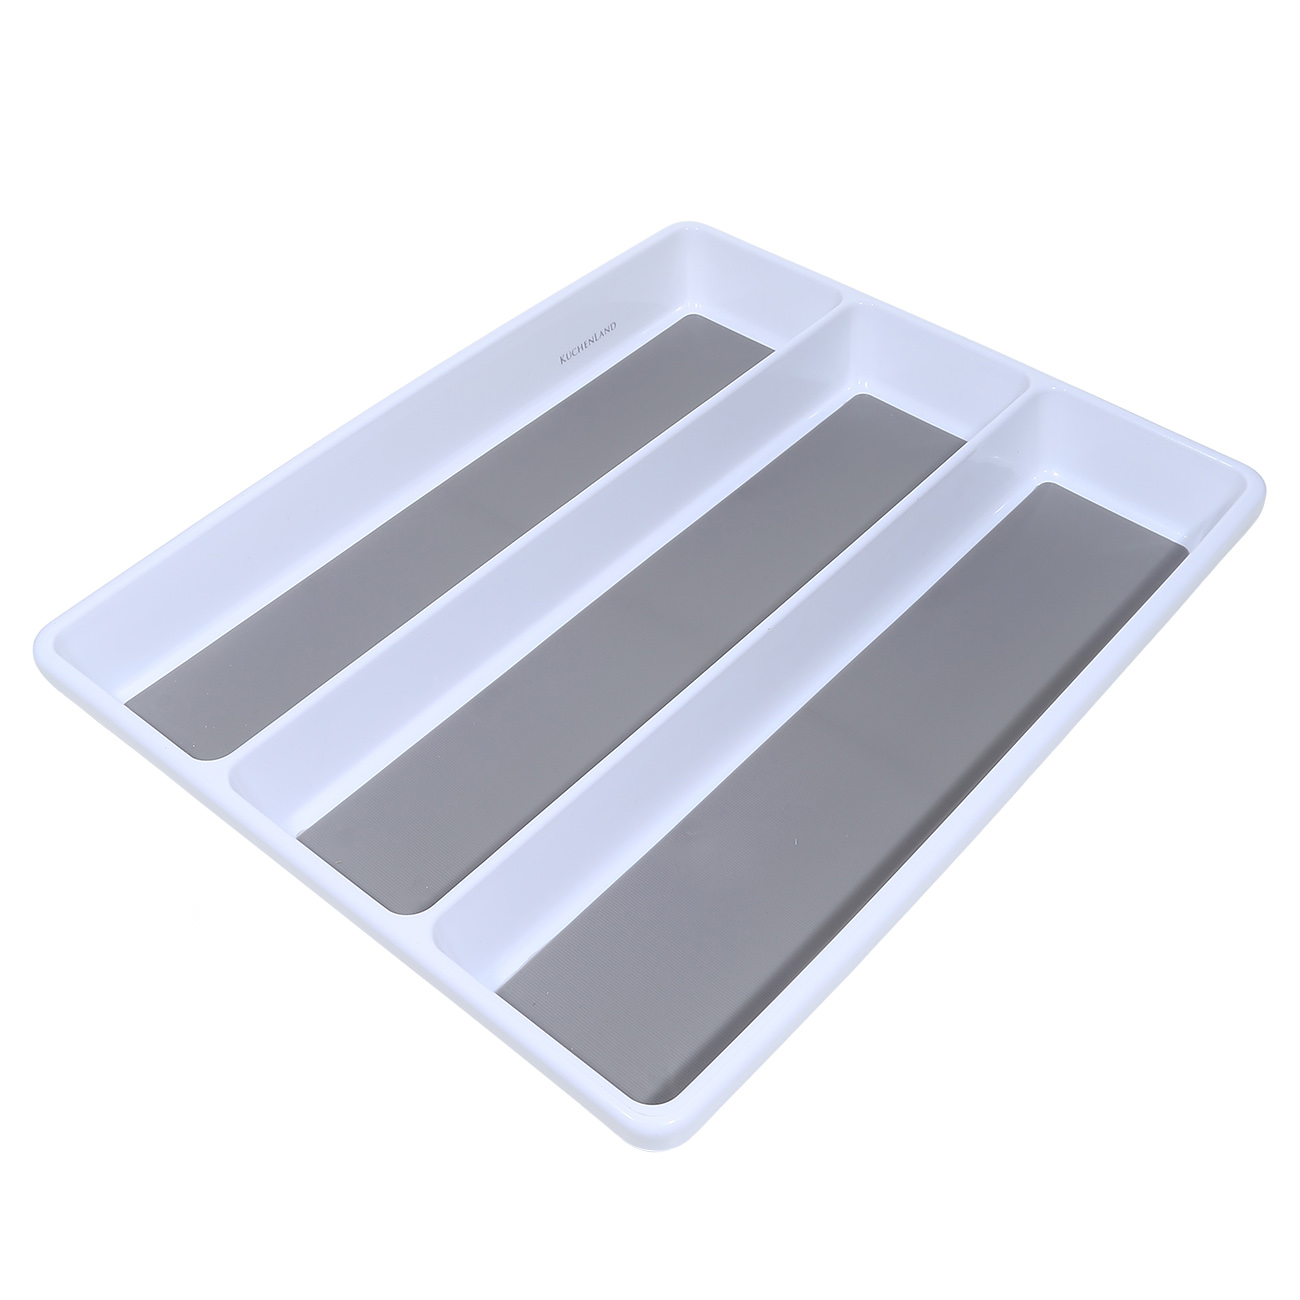 Kitchen accessories tray, 40x33 cm, 3 units, plastic / rubber, white-grey, Non-slip изображение № 2